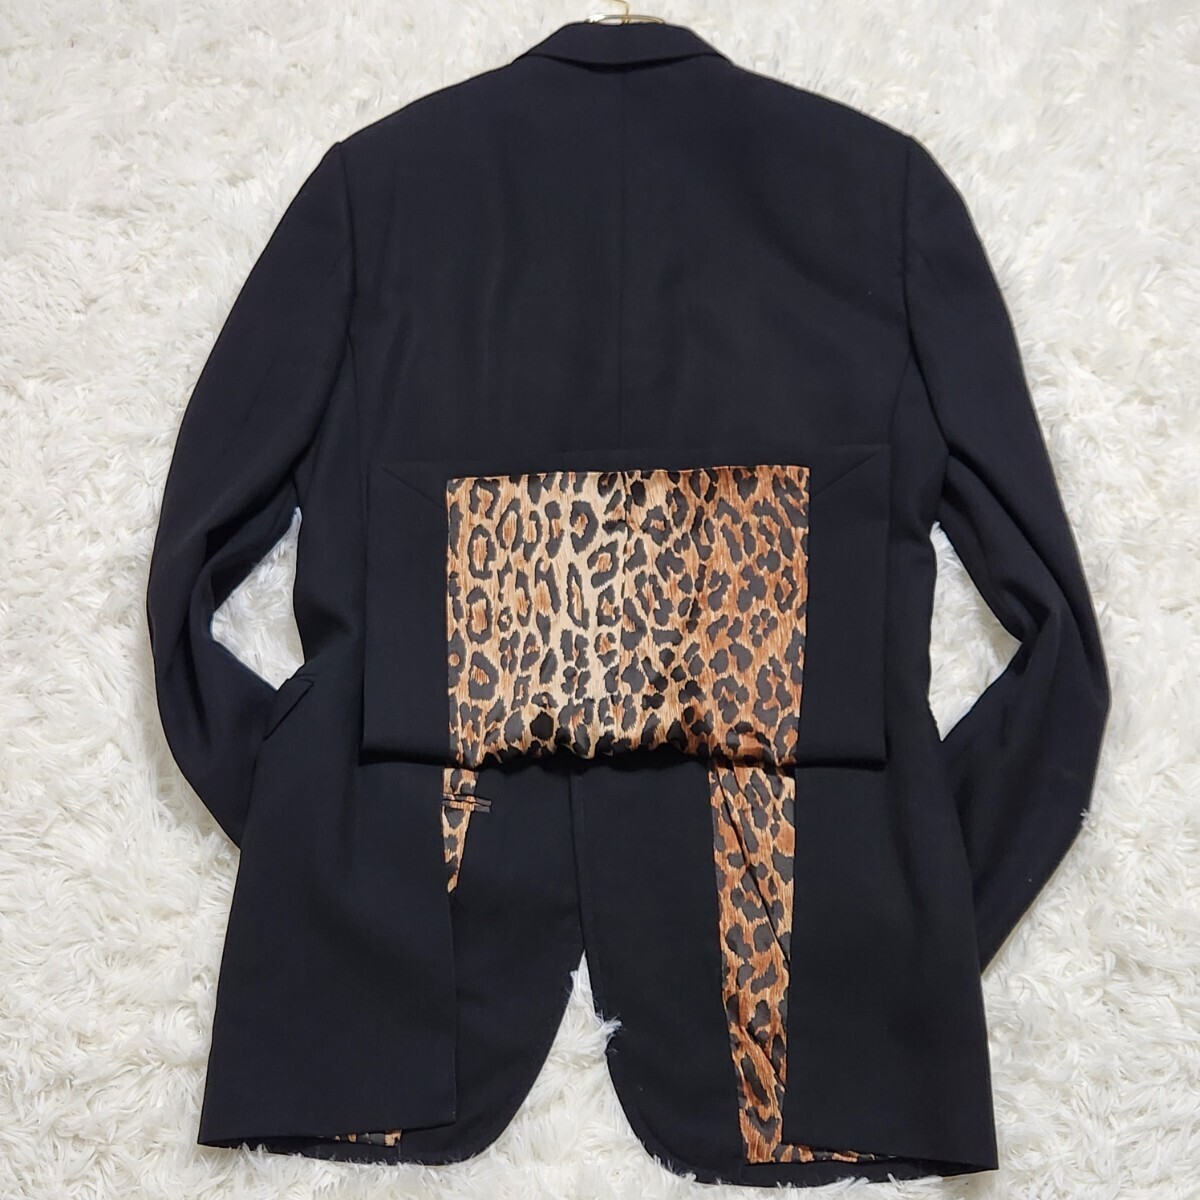  превосходный товар DOLCE&GABBANA [ другой .. присутствие ] Dolce & Gabbana tailored jacket подкладка общий рисунок Leopard леопардовый рисунок черный summer шерсть 